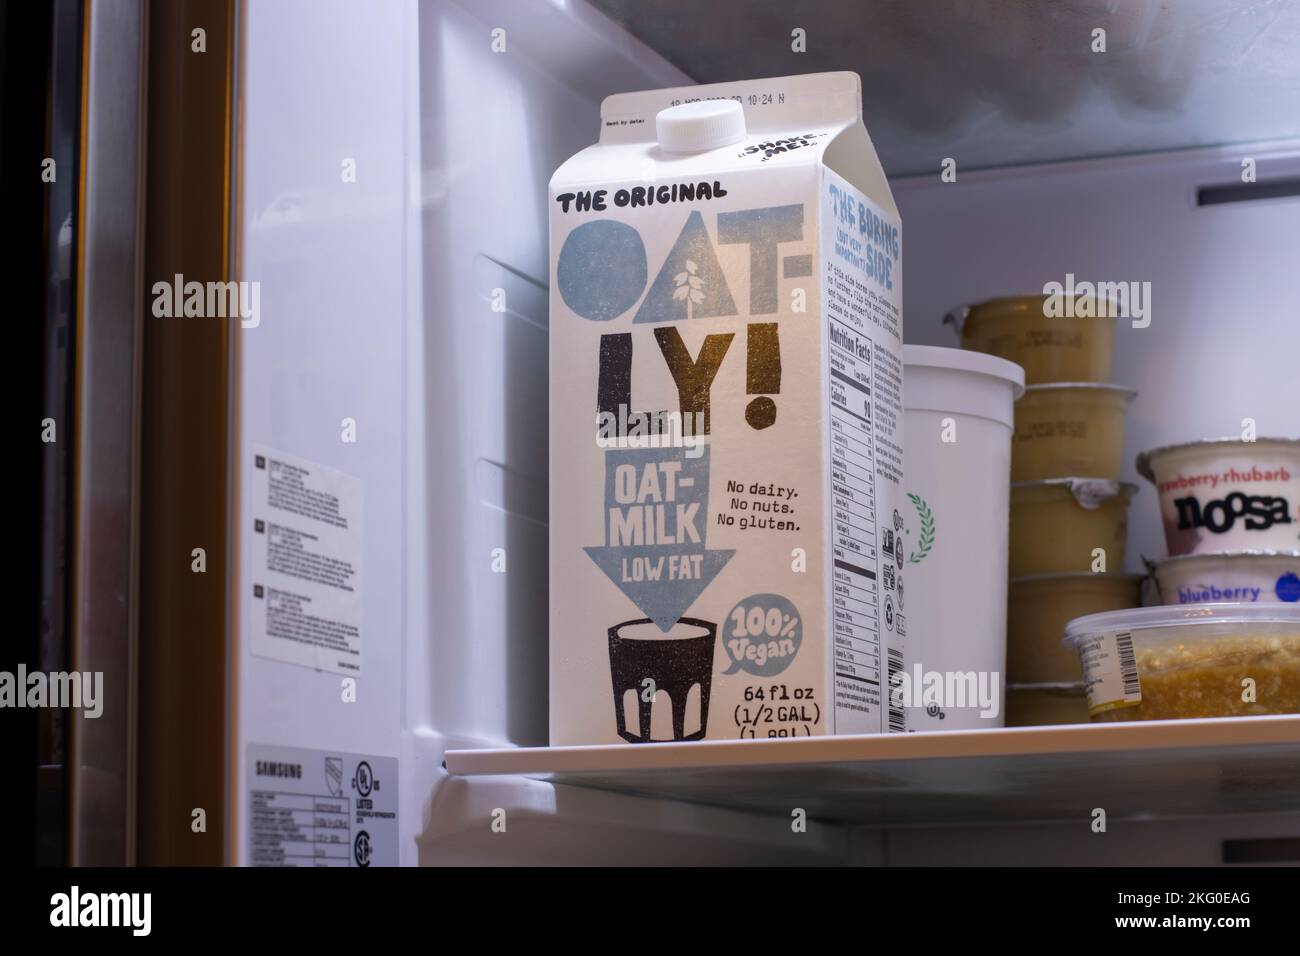 Un carton de lait d'avoine à faible teneur en gras de marque Oatly est vu dans un réfrigérateur. Oatly Group AB est une entreprise alimentaire suédoise qui produit des alternatives aux produits laitiers... Banque D'Images